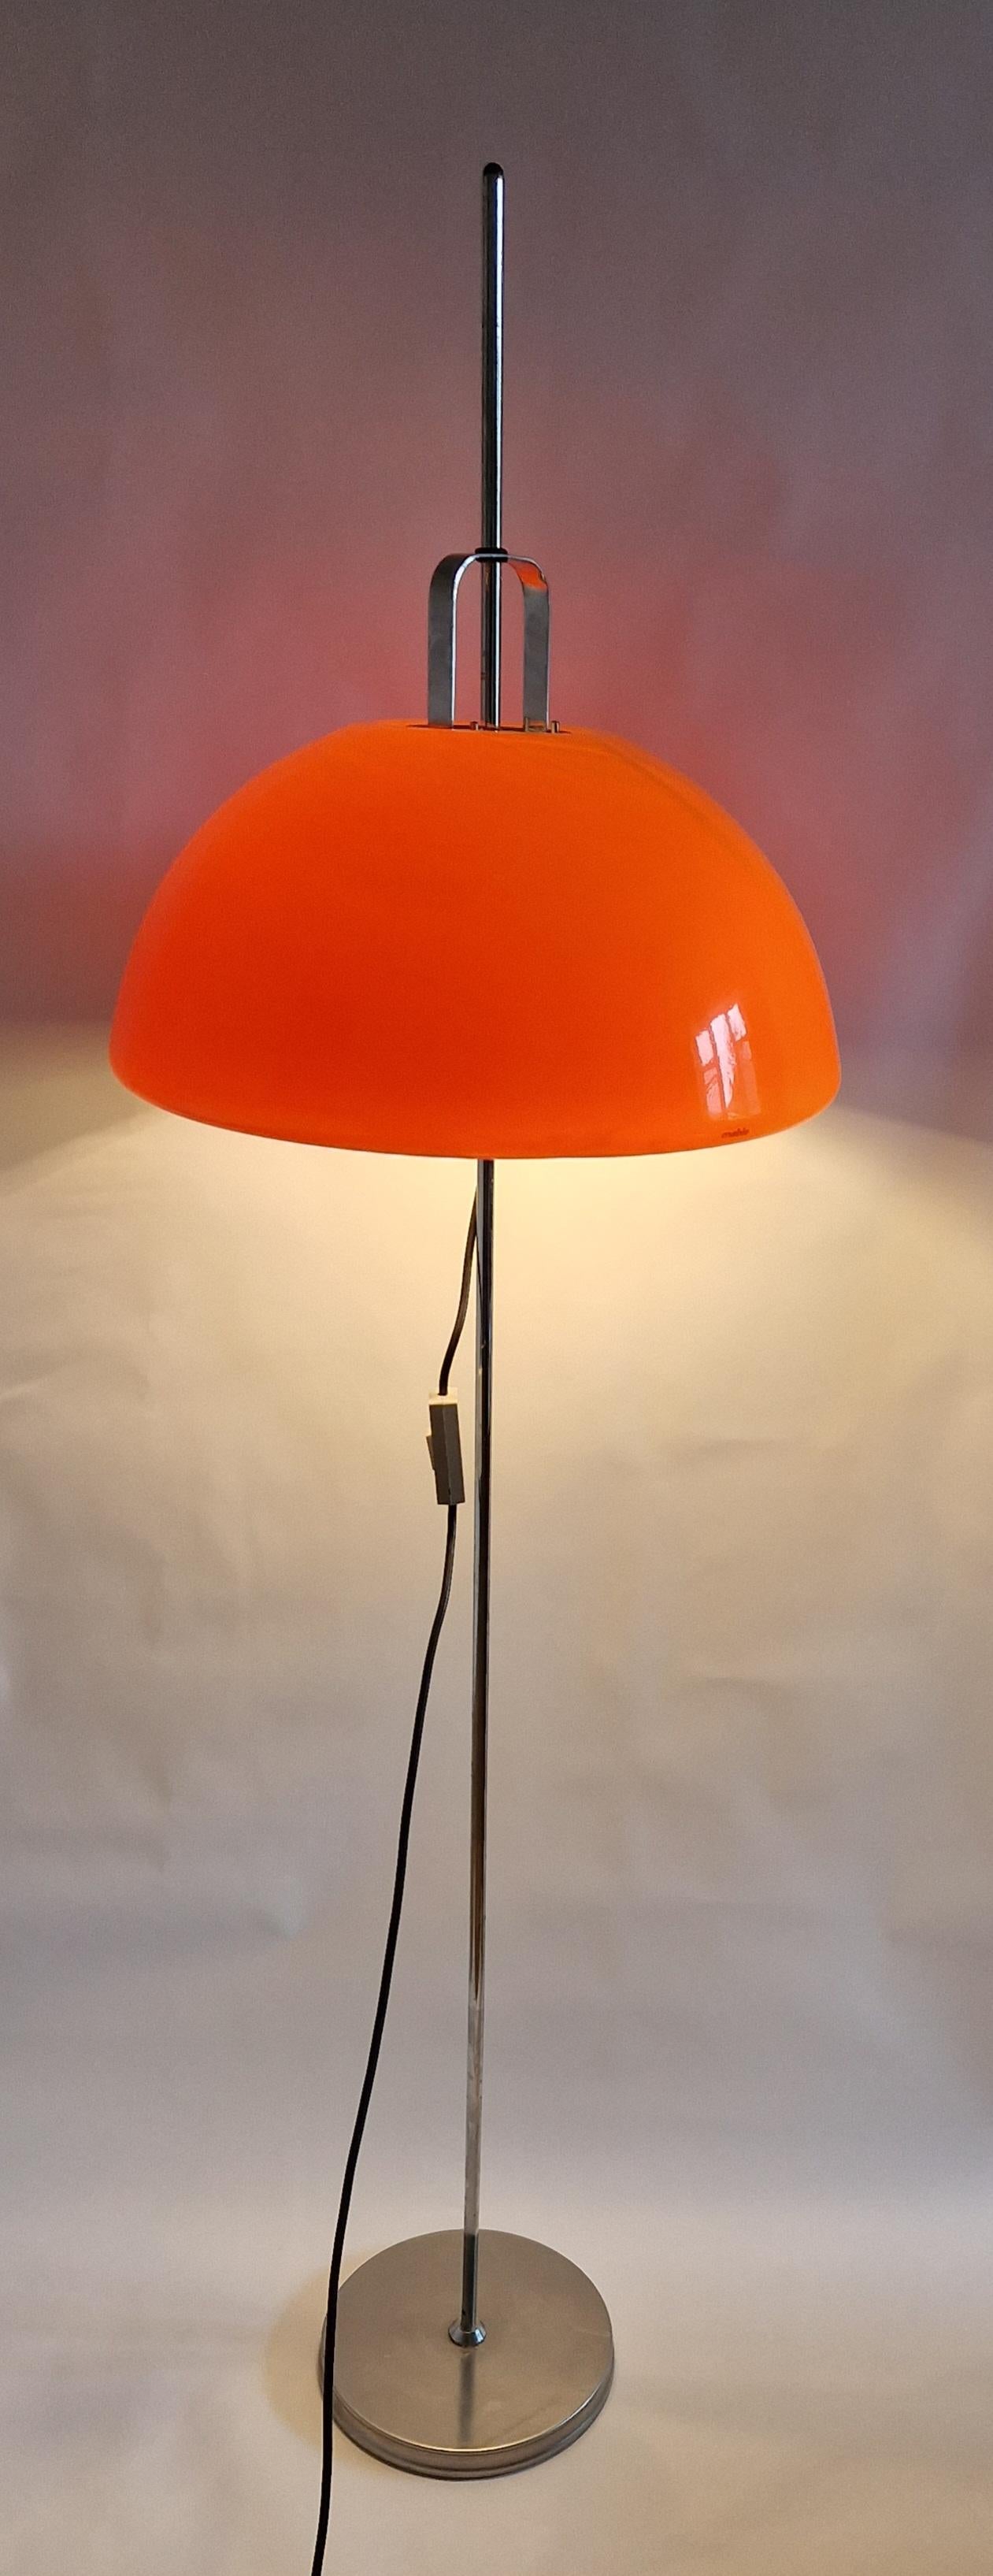 Italian Midcentury Adjustable Floor Lamp Meblo, Harvey Guzzini, Mushroom, Italy, 1970s For Sale